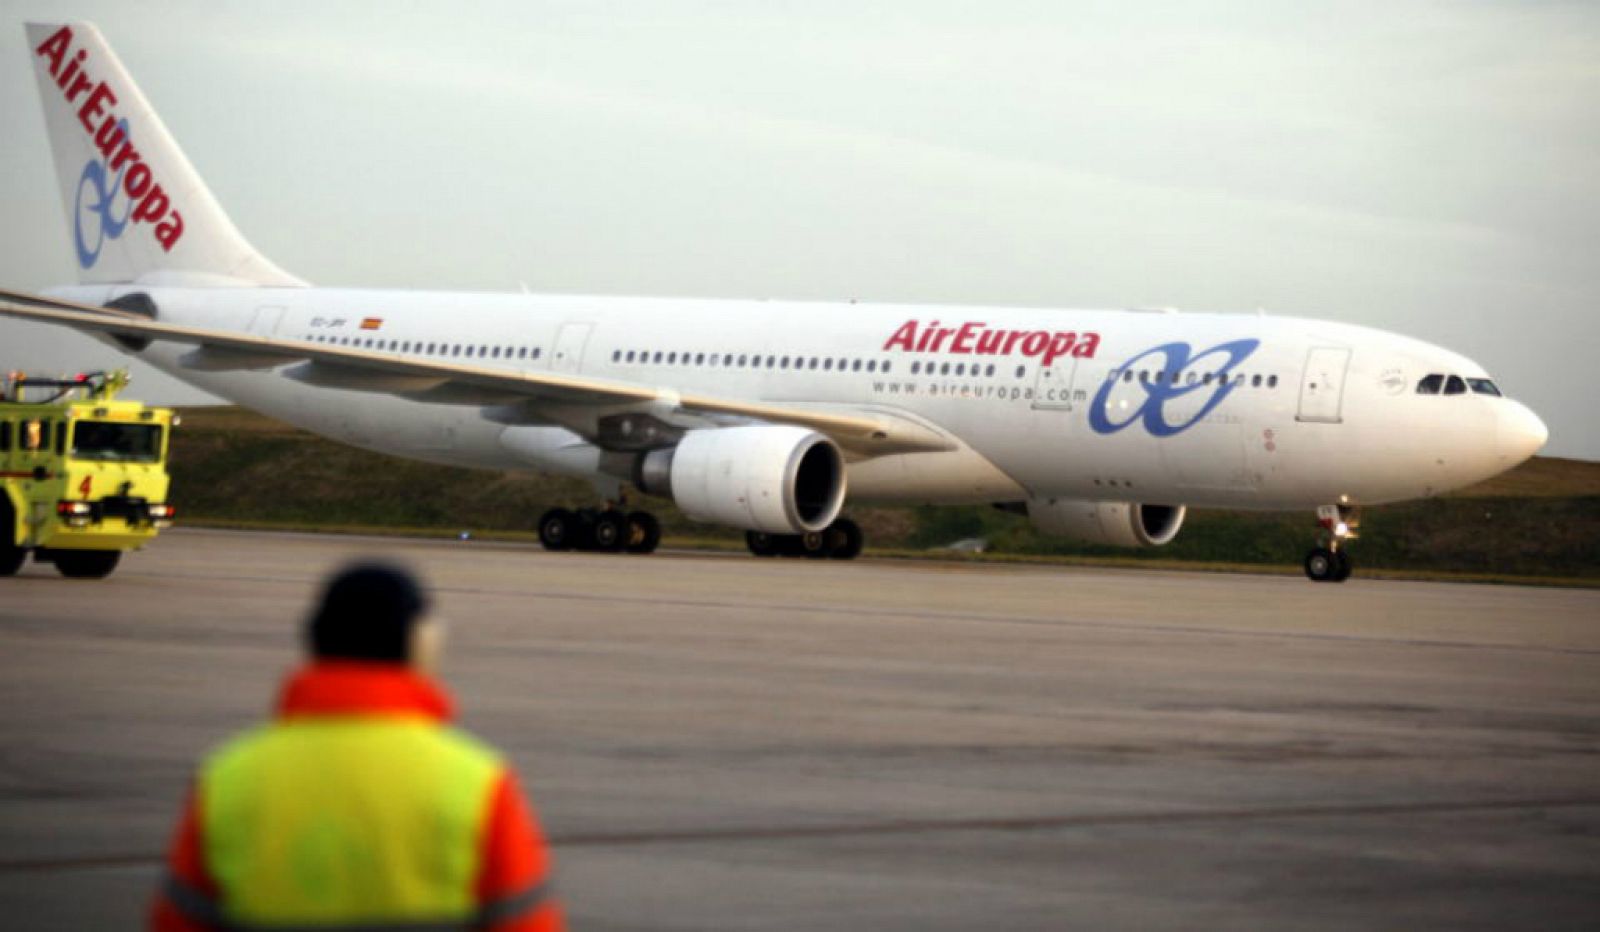 14 horas - Los pilotos de Air Europa piden dejar de volar a Venezuela - Escuchar ahora